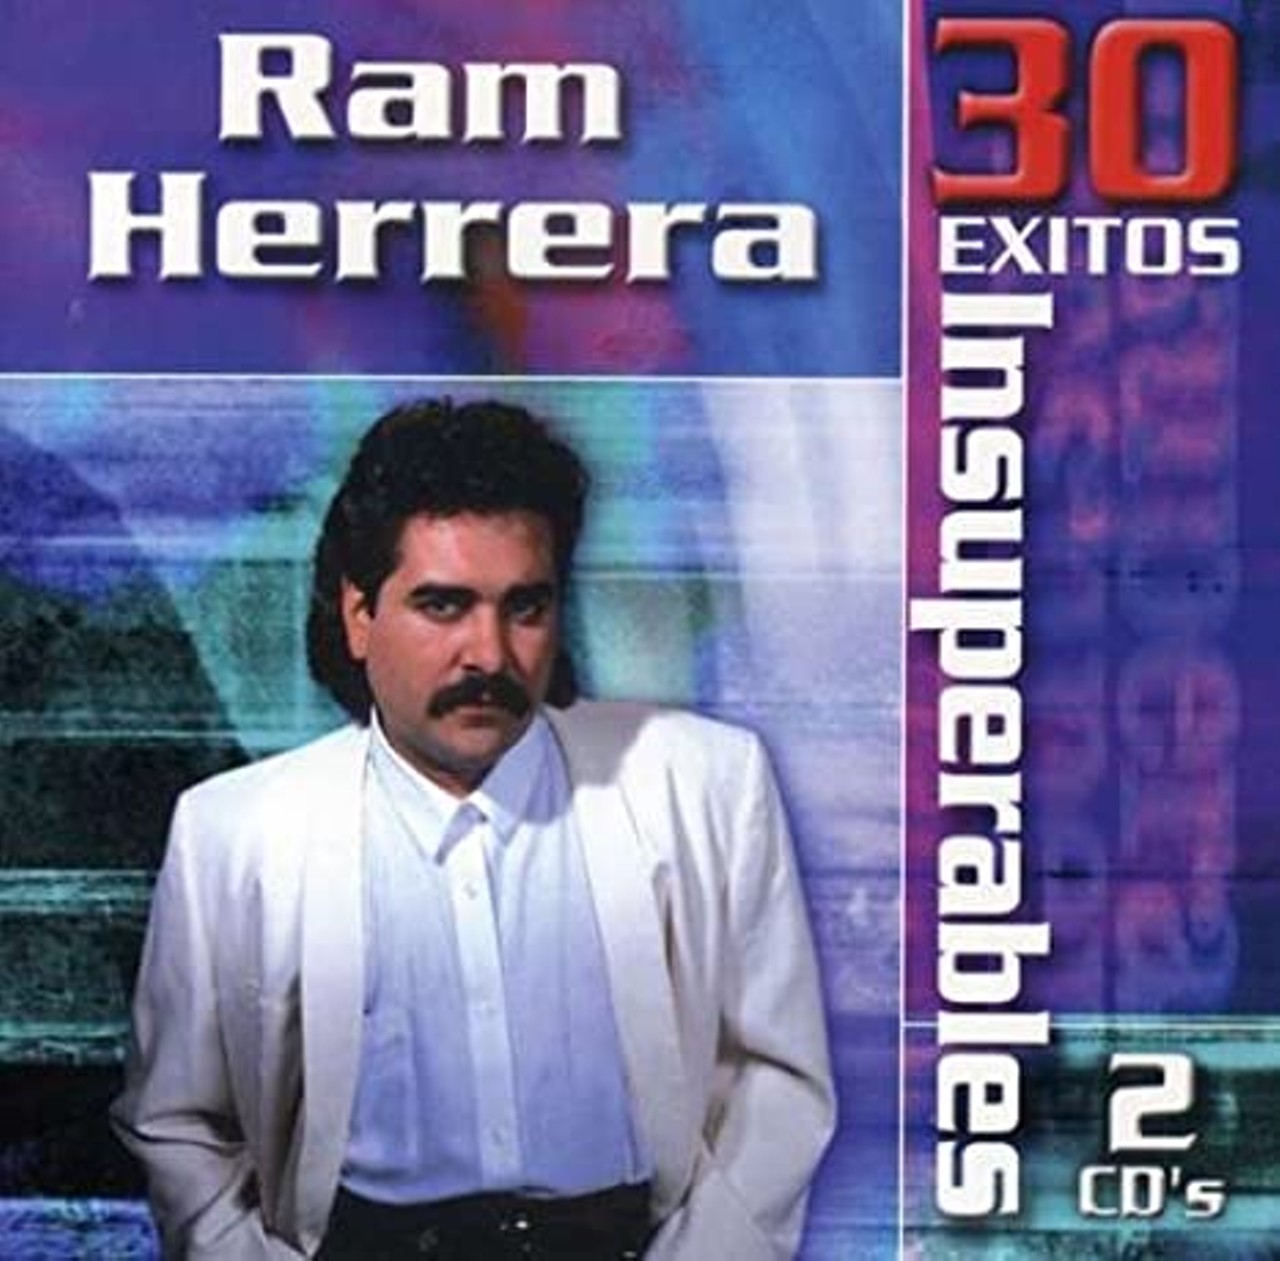 6. Ram Herrera "Entre Cantina Y Cantina